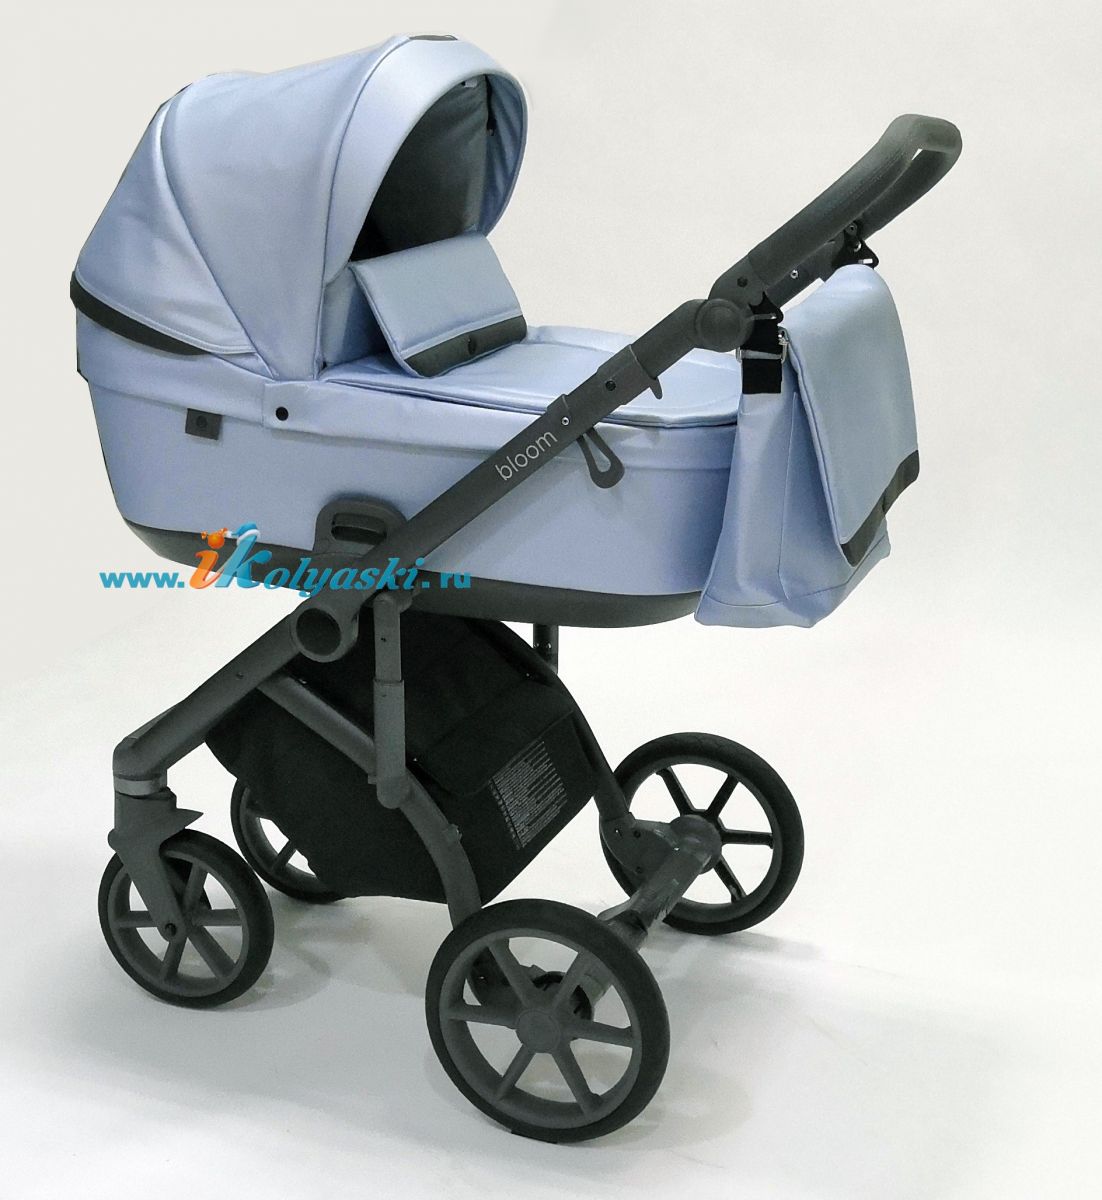 Roan Bloom 2 в 1 детская коляска для новорожденного Роан Блум на гелиевых поворотных колесах с прогулочным блоком - купить в Москве с доставкой по РФ- цвет Blue Perl перламутровый металлик экокожа